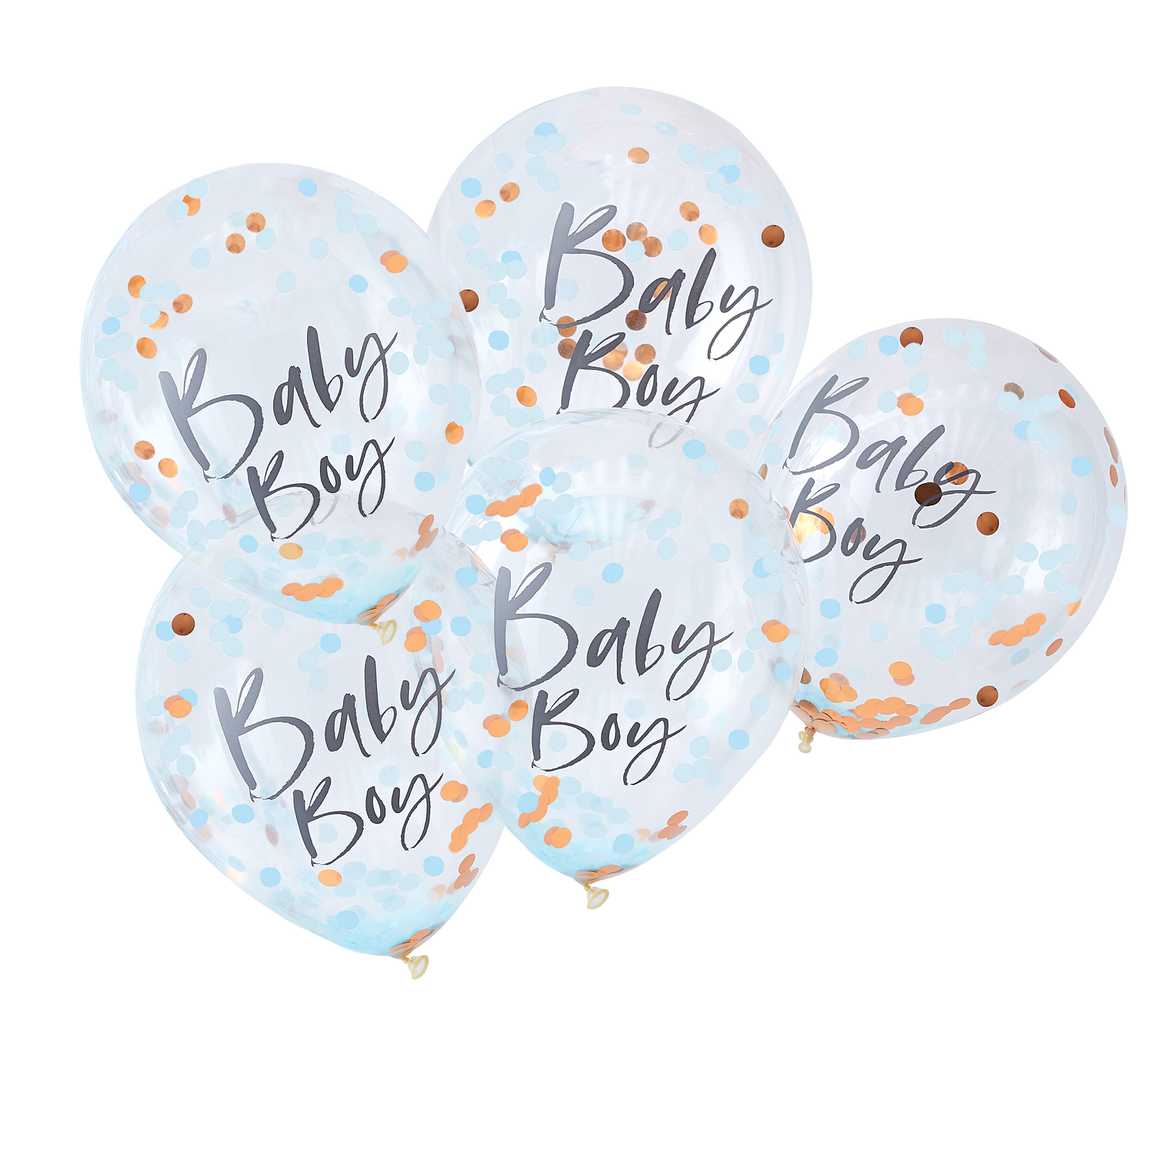 Billede af Babyshower - Blå baby boy balloner